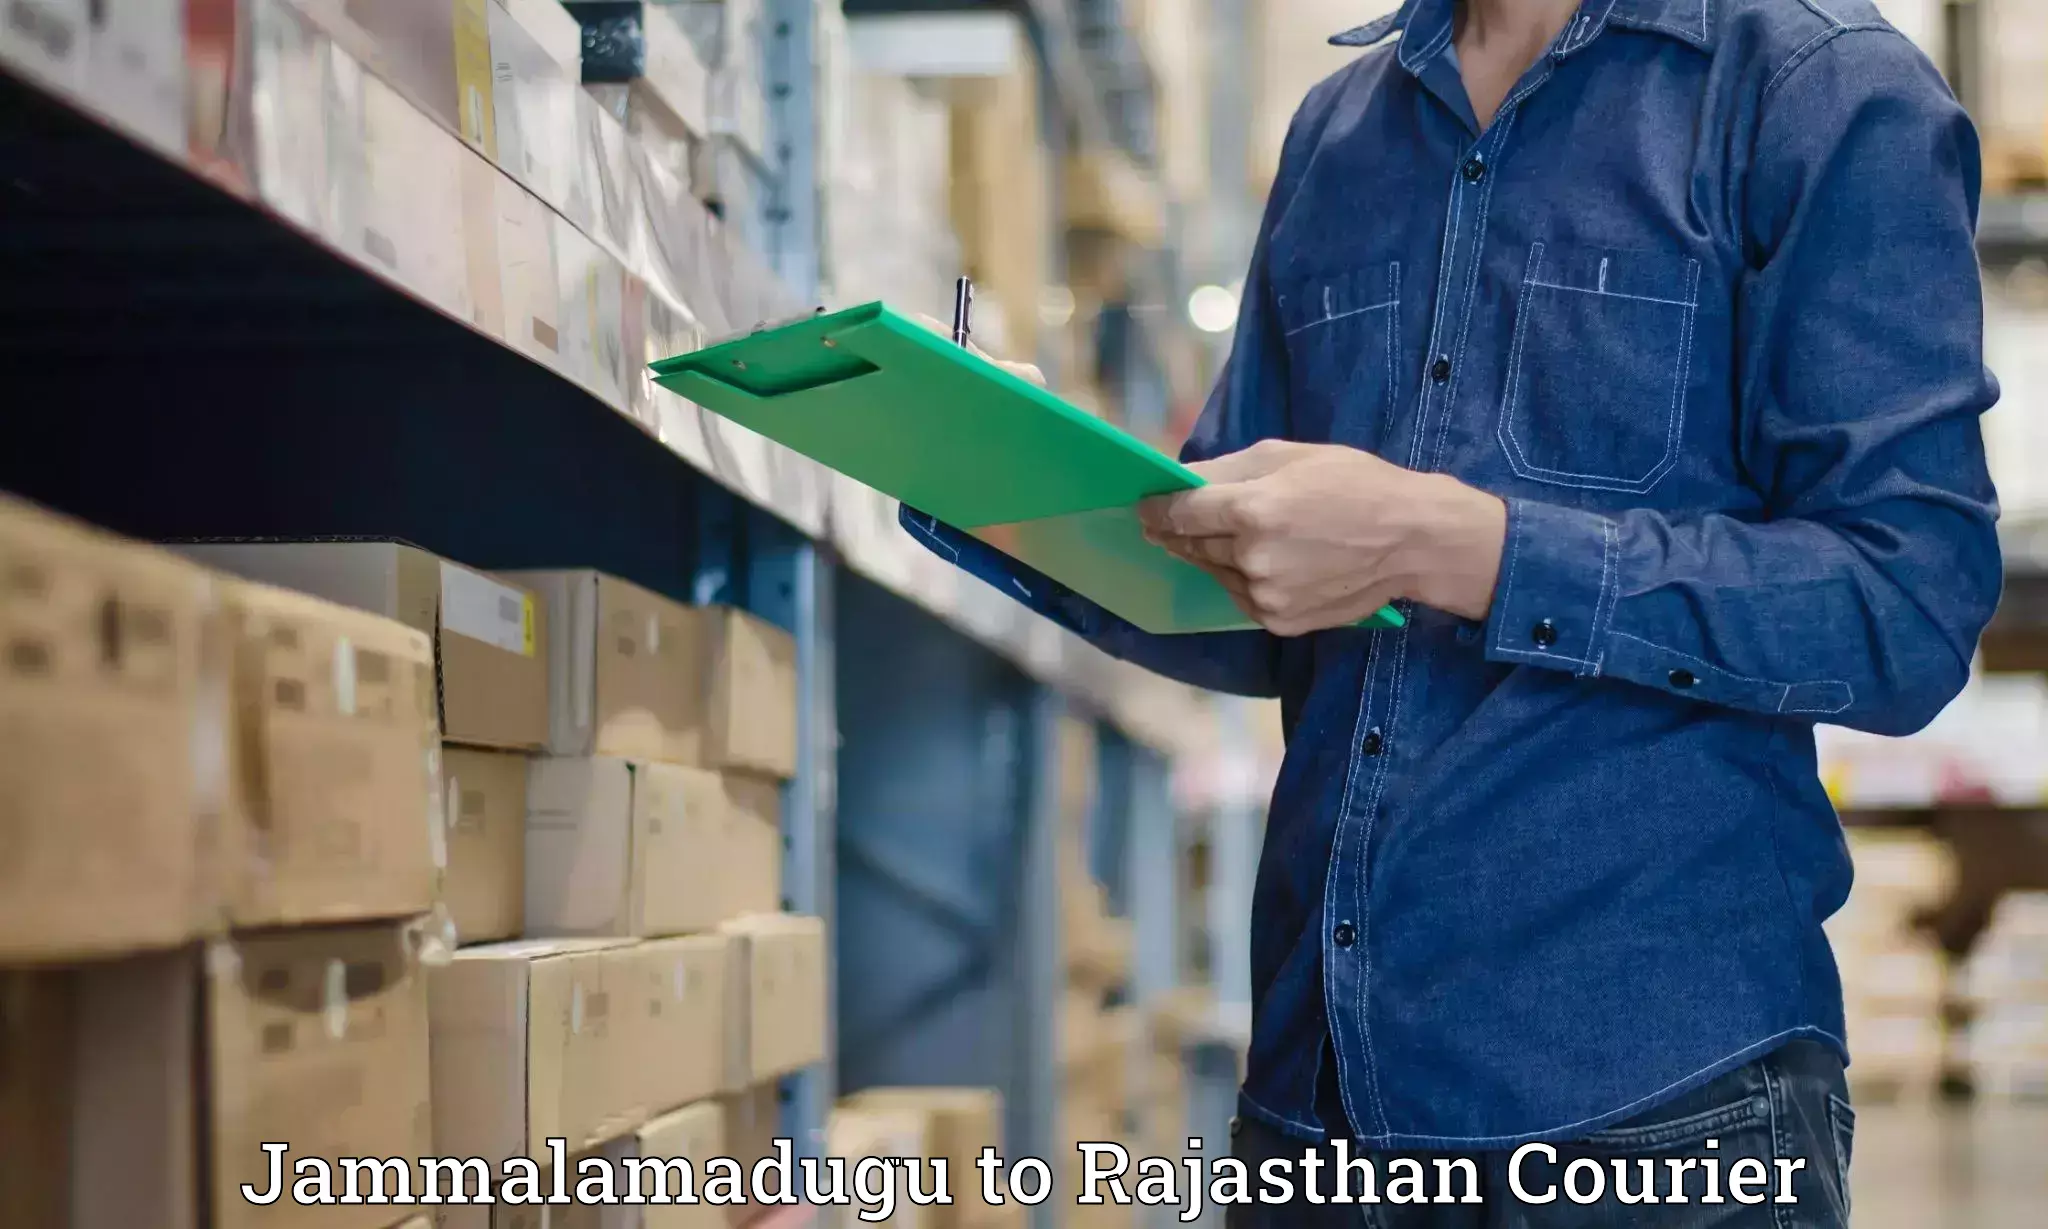 Courier service partnerships Jammalamadugu to Dungarpur